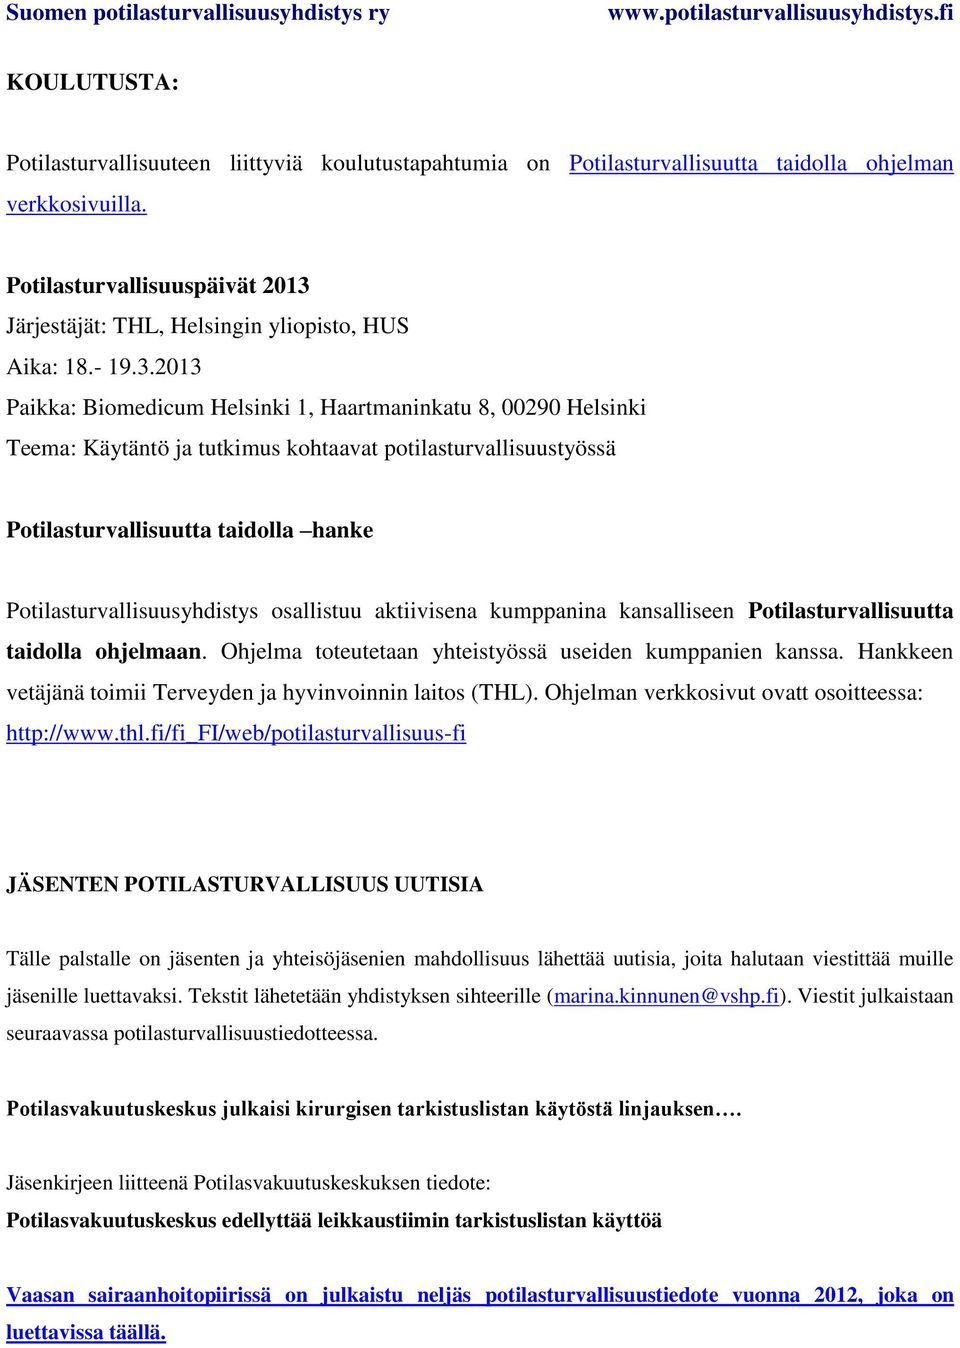 Järjestäjät: THL, Helsingin yliopisto, HUS Aika: 18.- 19.3.